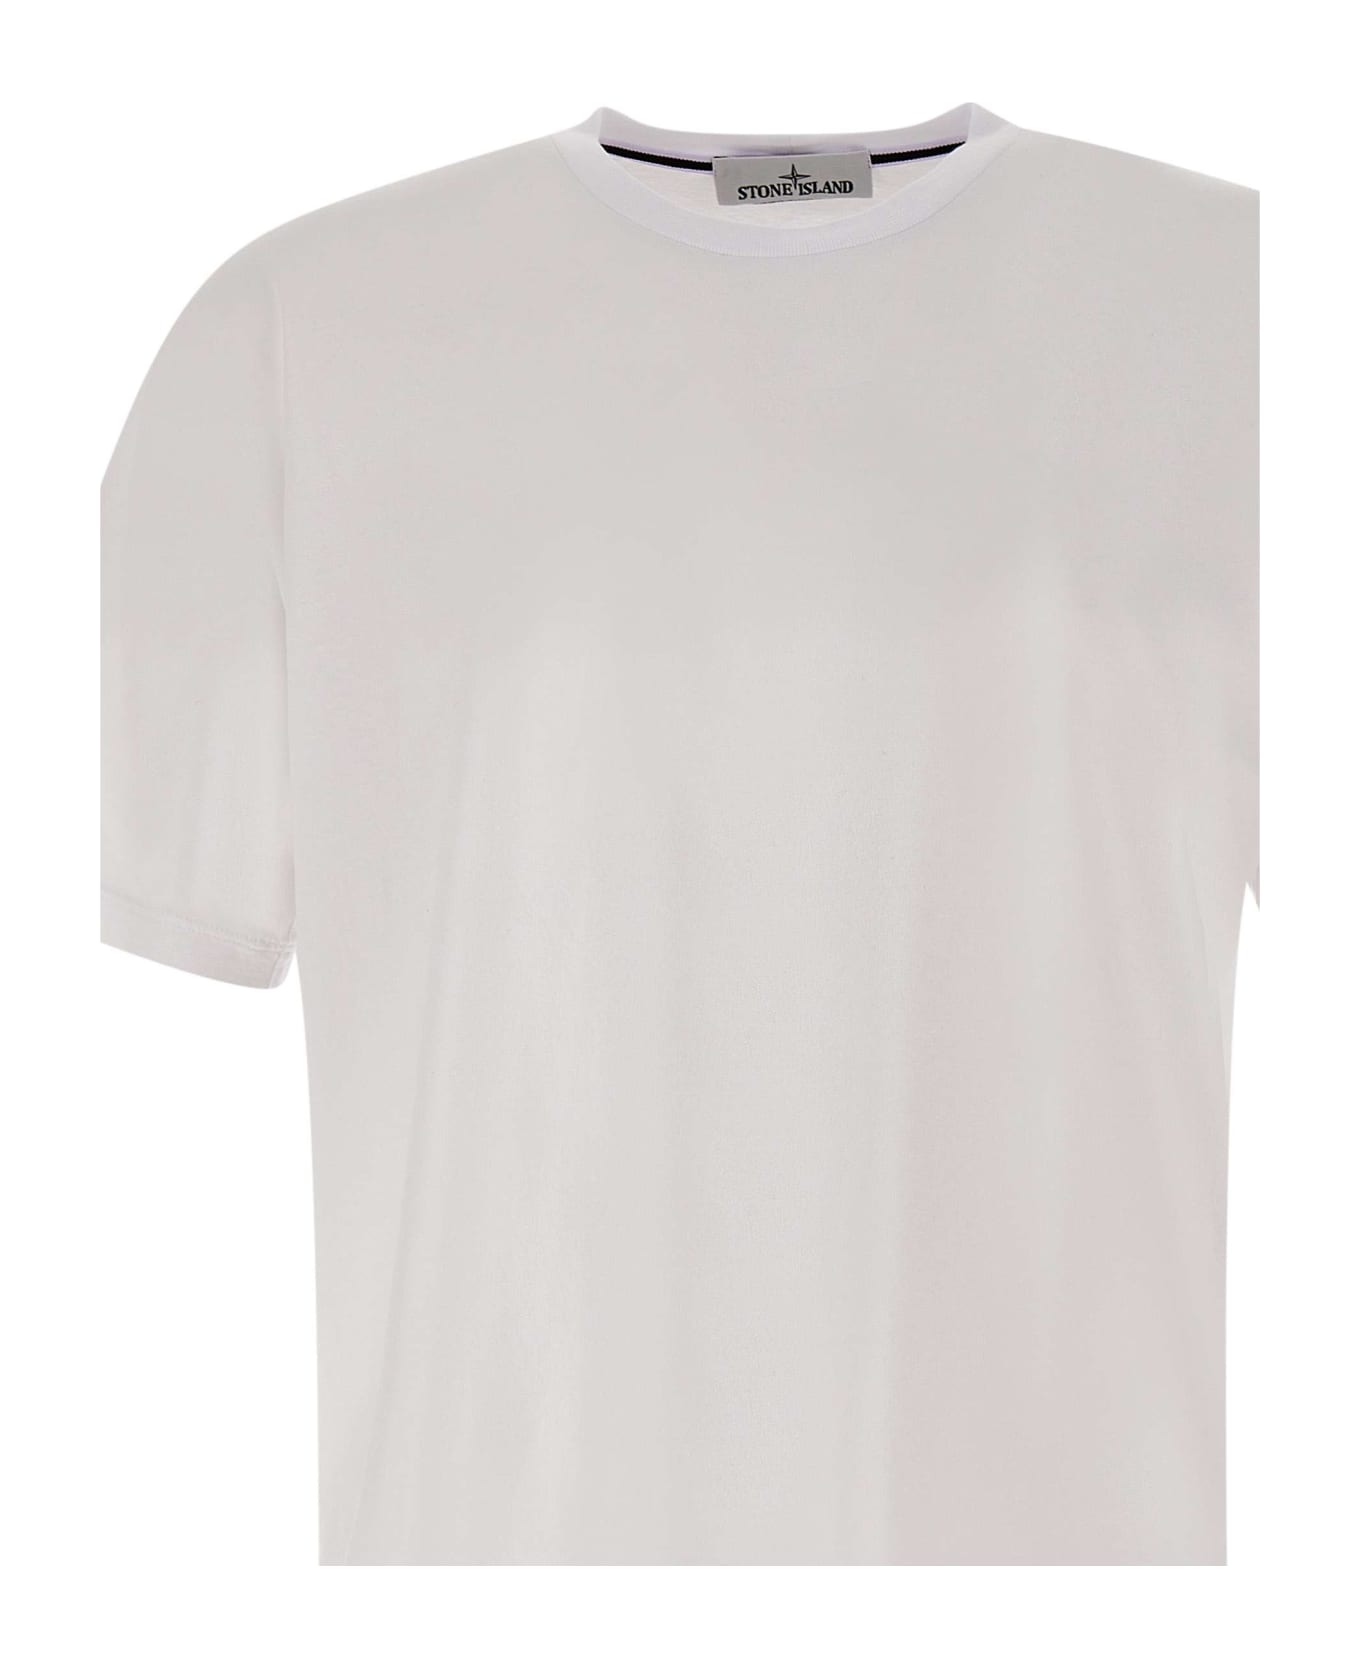 Stone Island Cotton T-shirt - WHITE シャツ